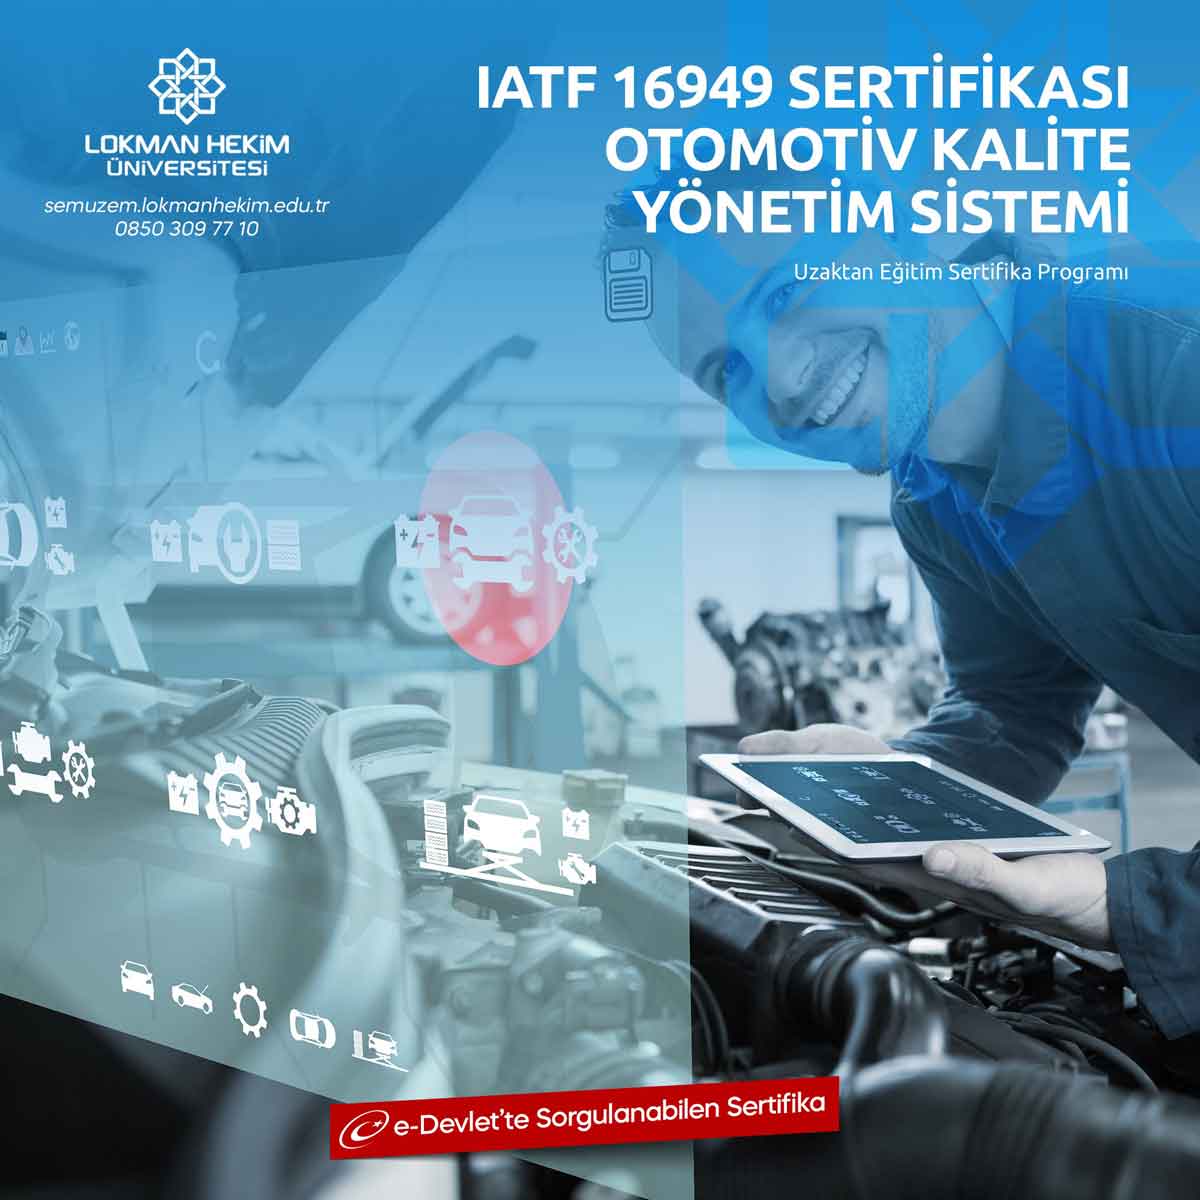 IATF 16949 Otomotiv Kalite Yönetim Sistemi Sertifikası Nedir, Nasıl Alınır?